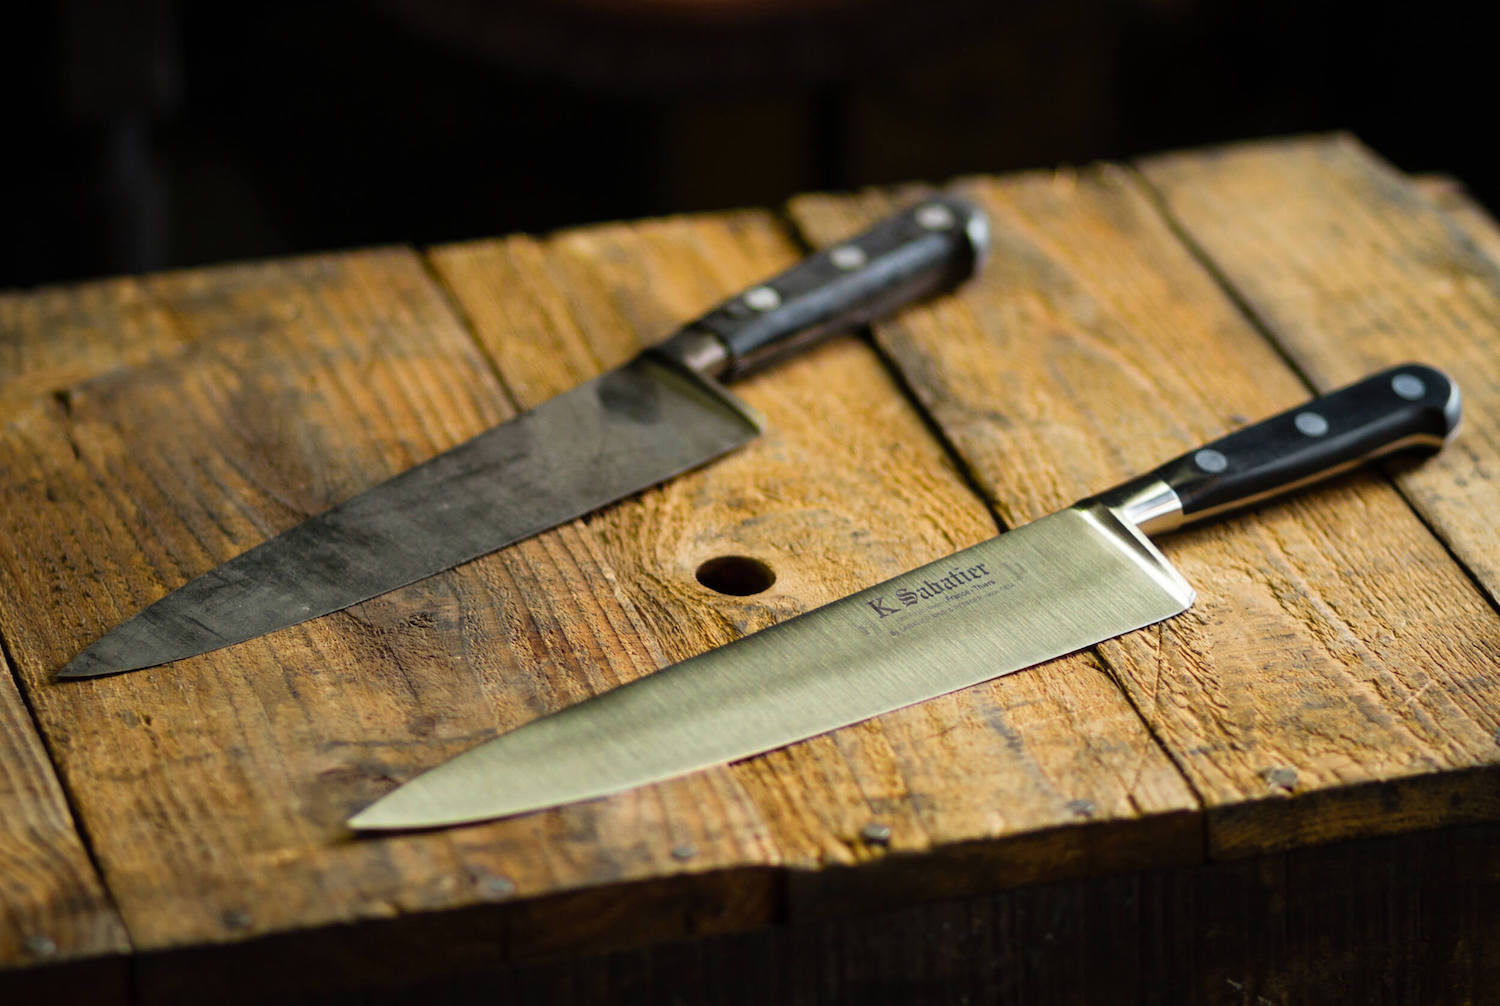 Couteau Sabatier : Site Officiel des couteaux de cuisine Sabatier